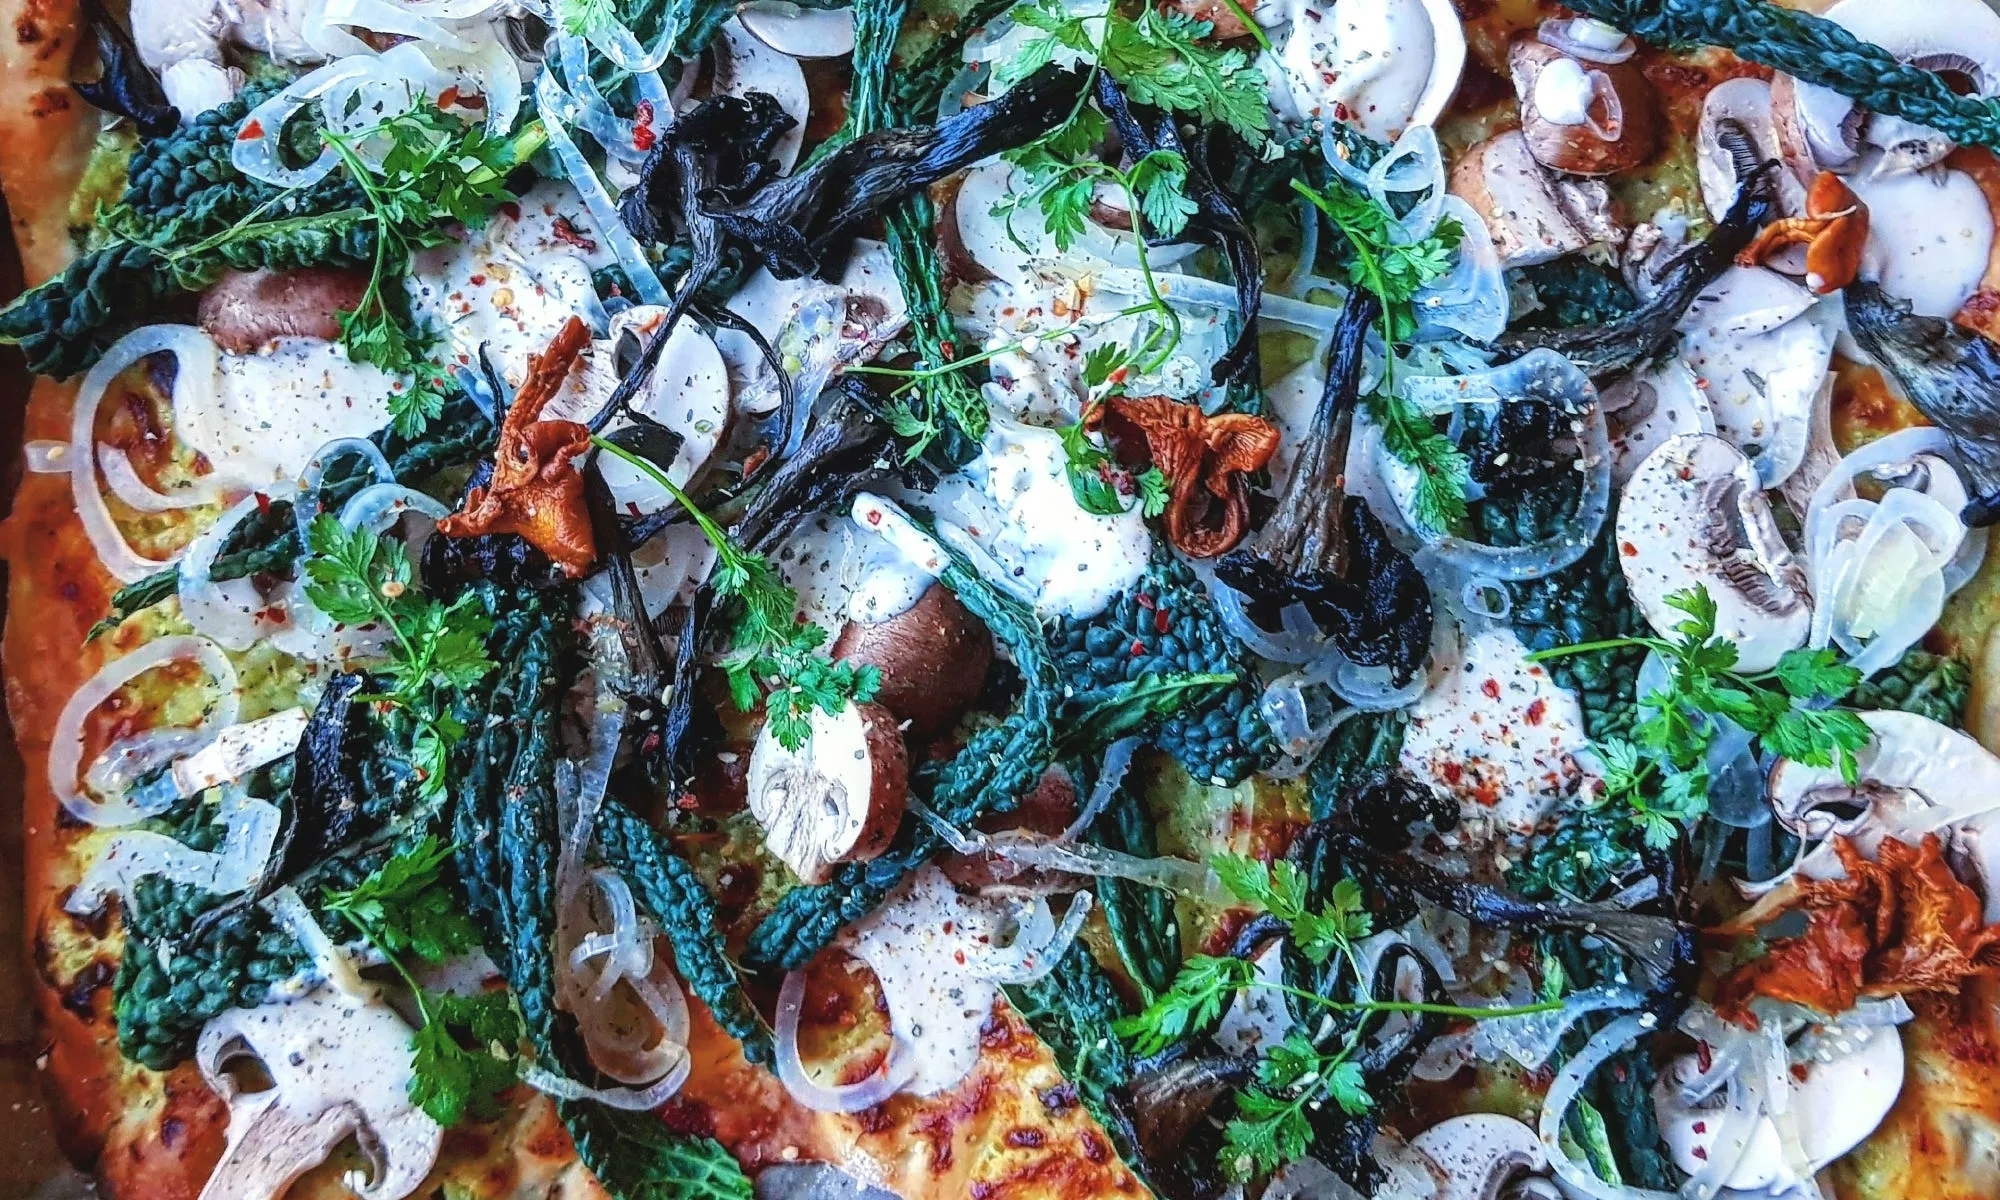 PÅ VÅR SPIS! - recept på en god Pizza Bianco, med svamp, svartkål och fetasostkräm